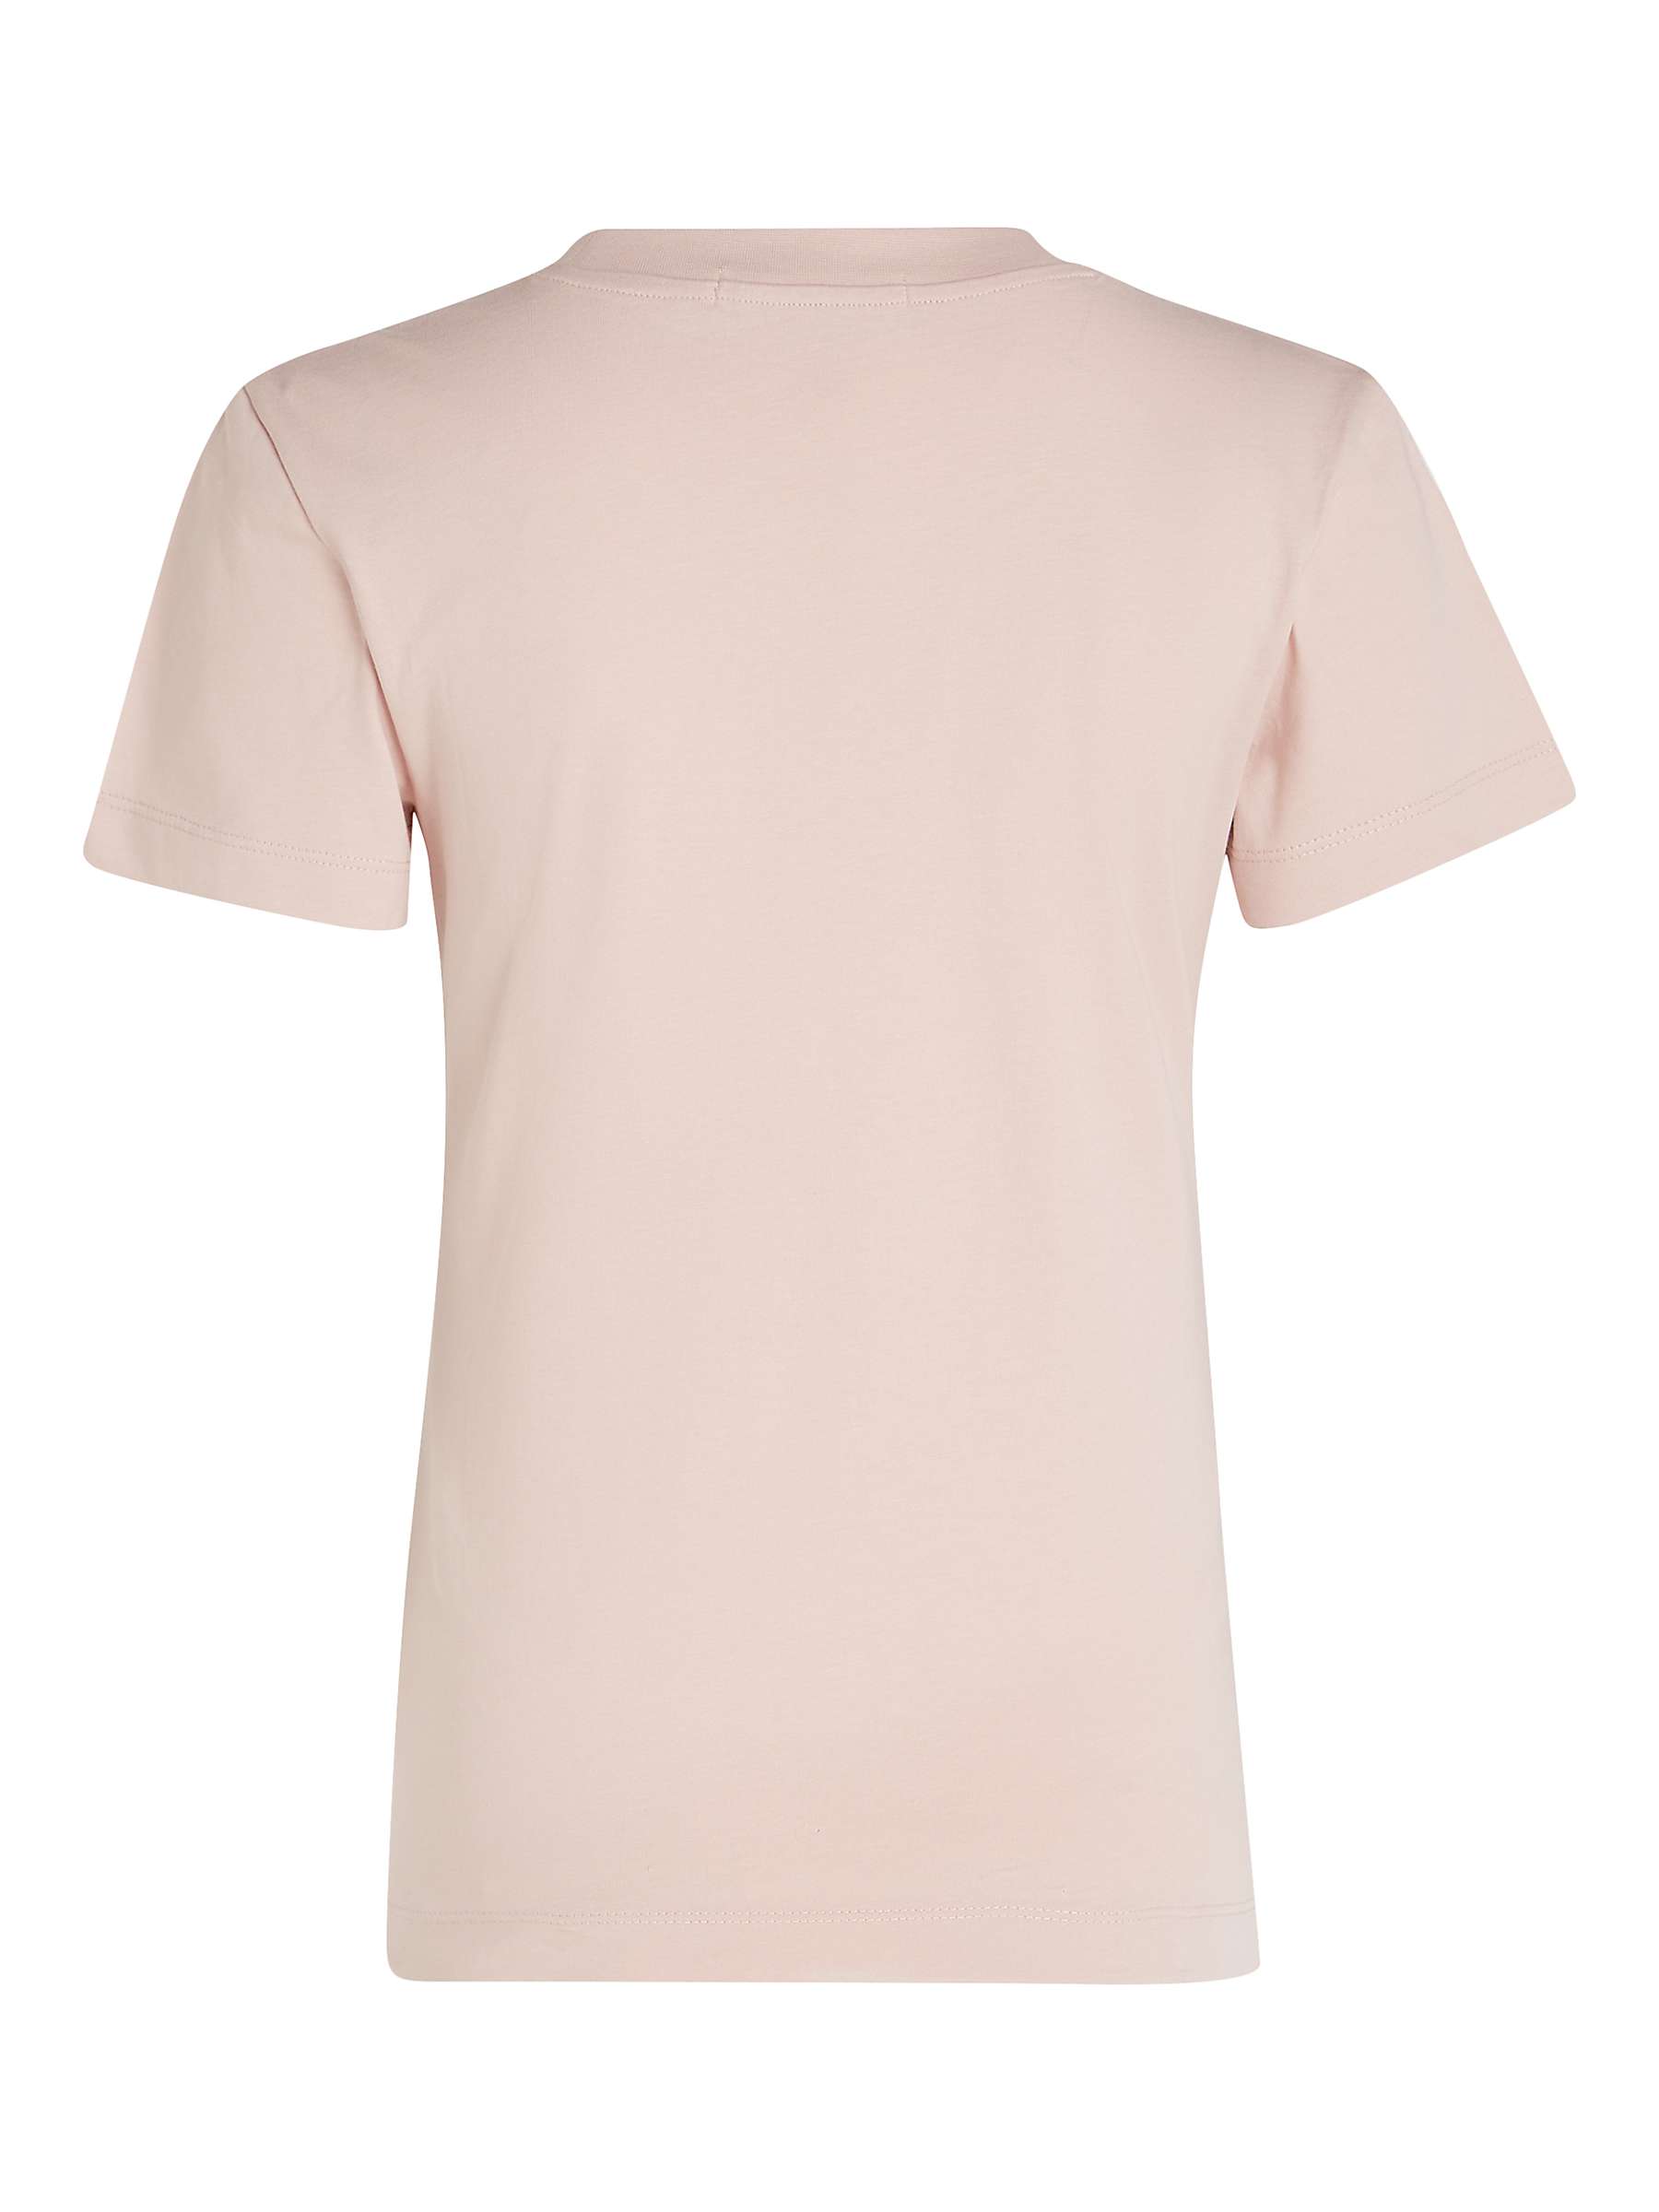 Buy Calvin Klein Cotton Logo Slim T-shirt, Sepia Rose Online at johnlewis.com